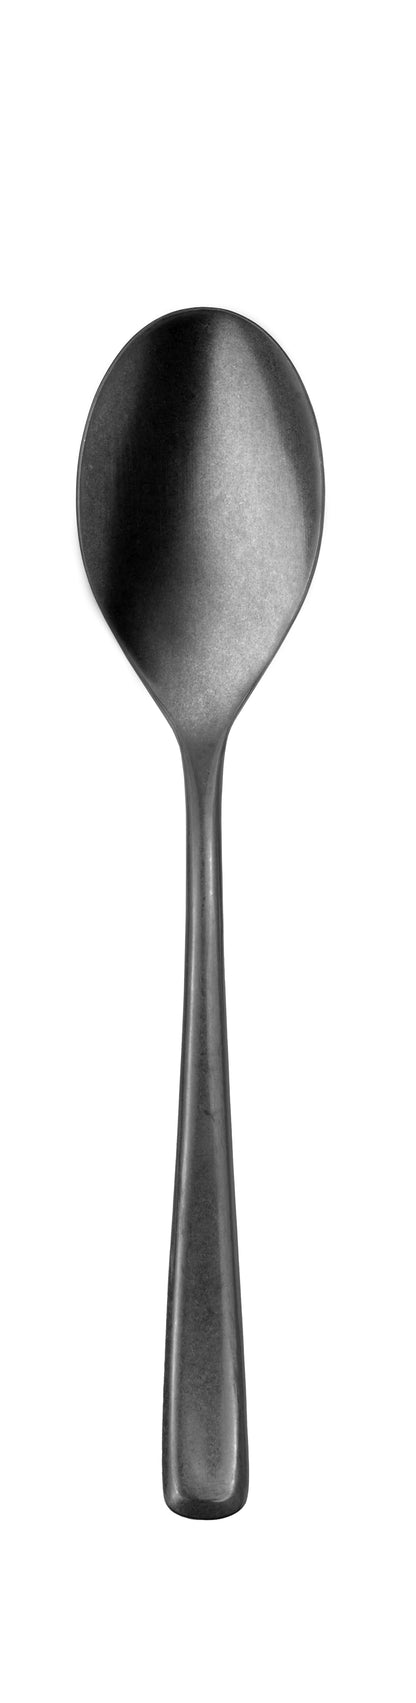 Table spoon MEDAN PVD gun metal stonewashed 214 mm